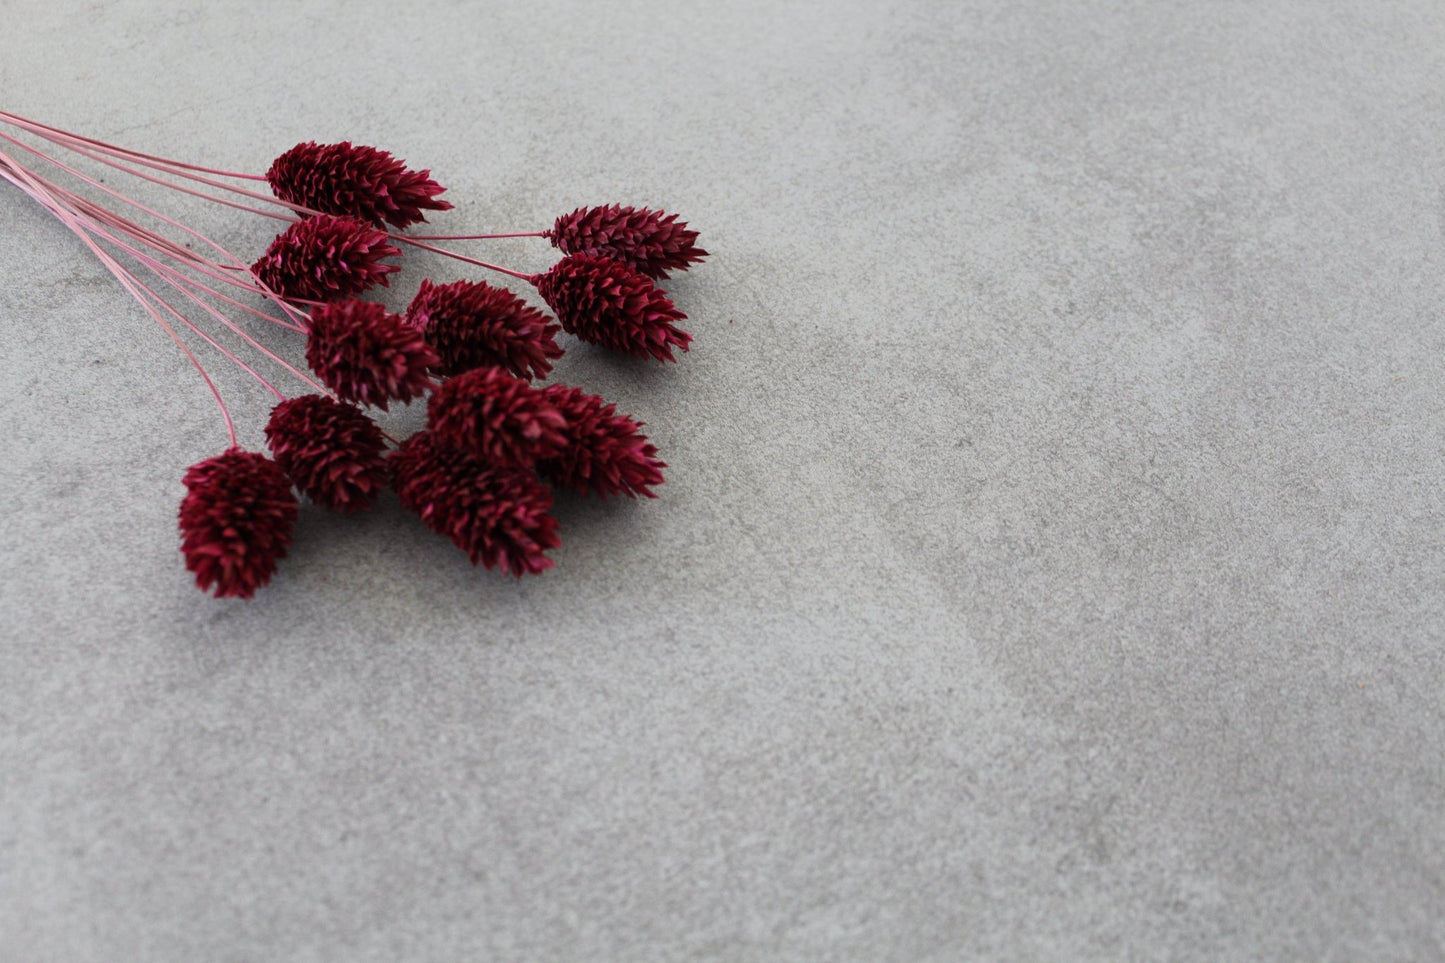 Phalaris rot berry - Trockenblumen